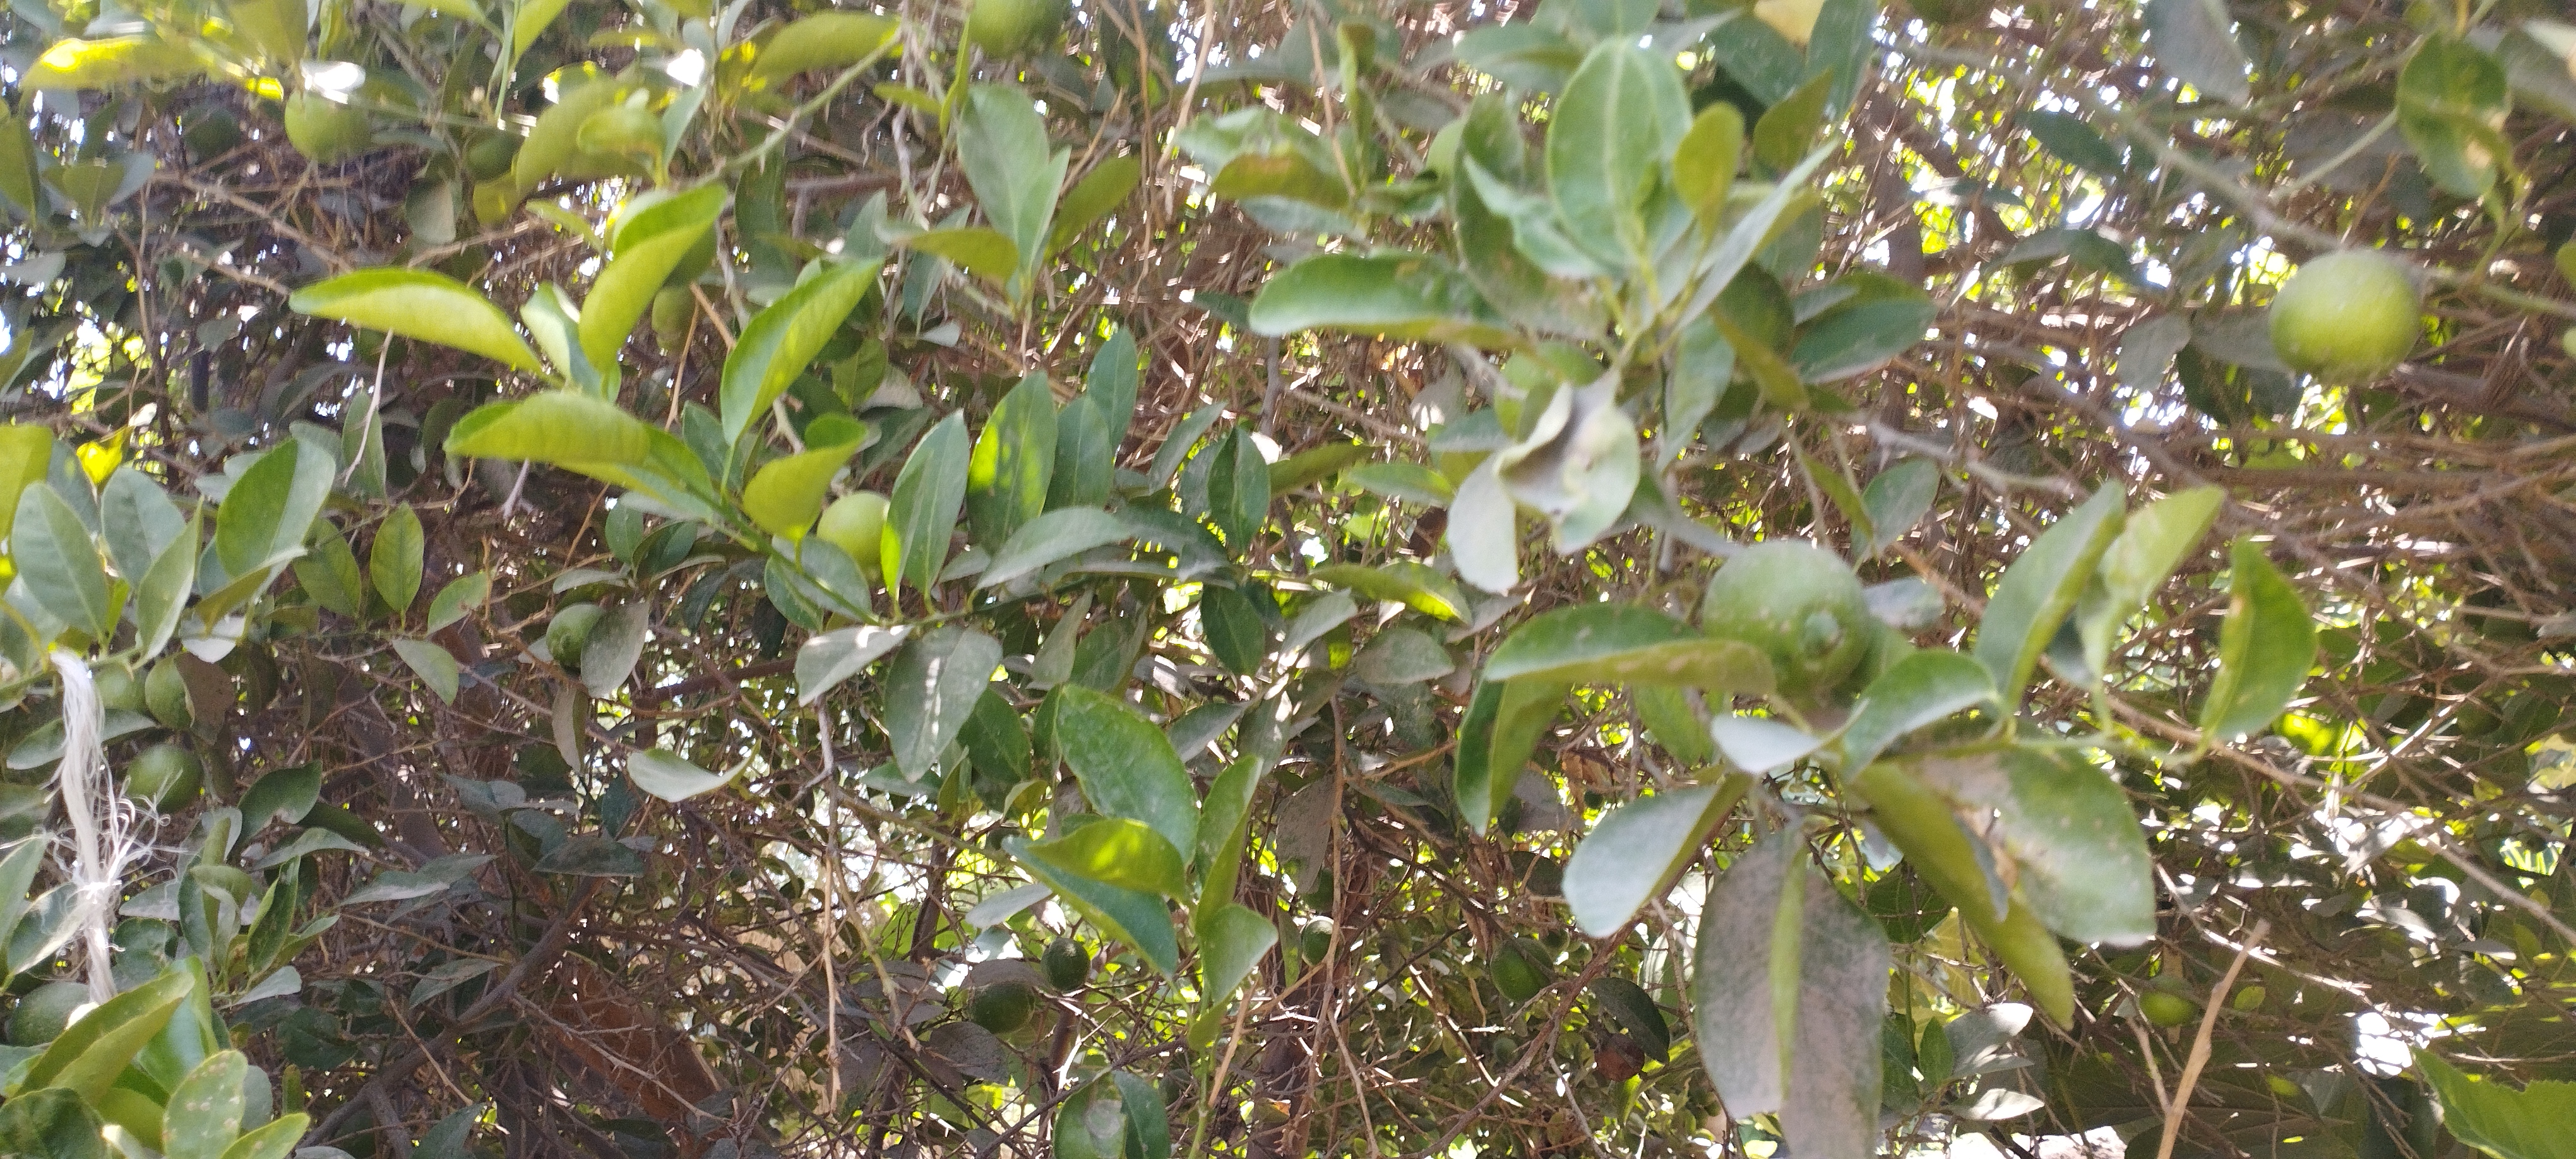 اشجار الليمون تزين مزارع المنيا (5)